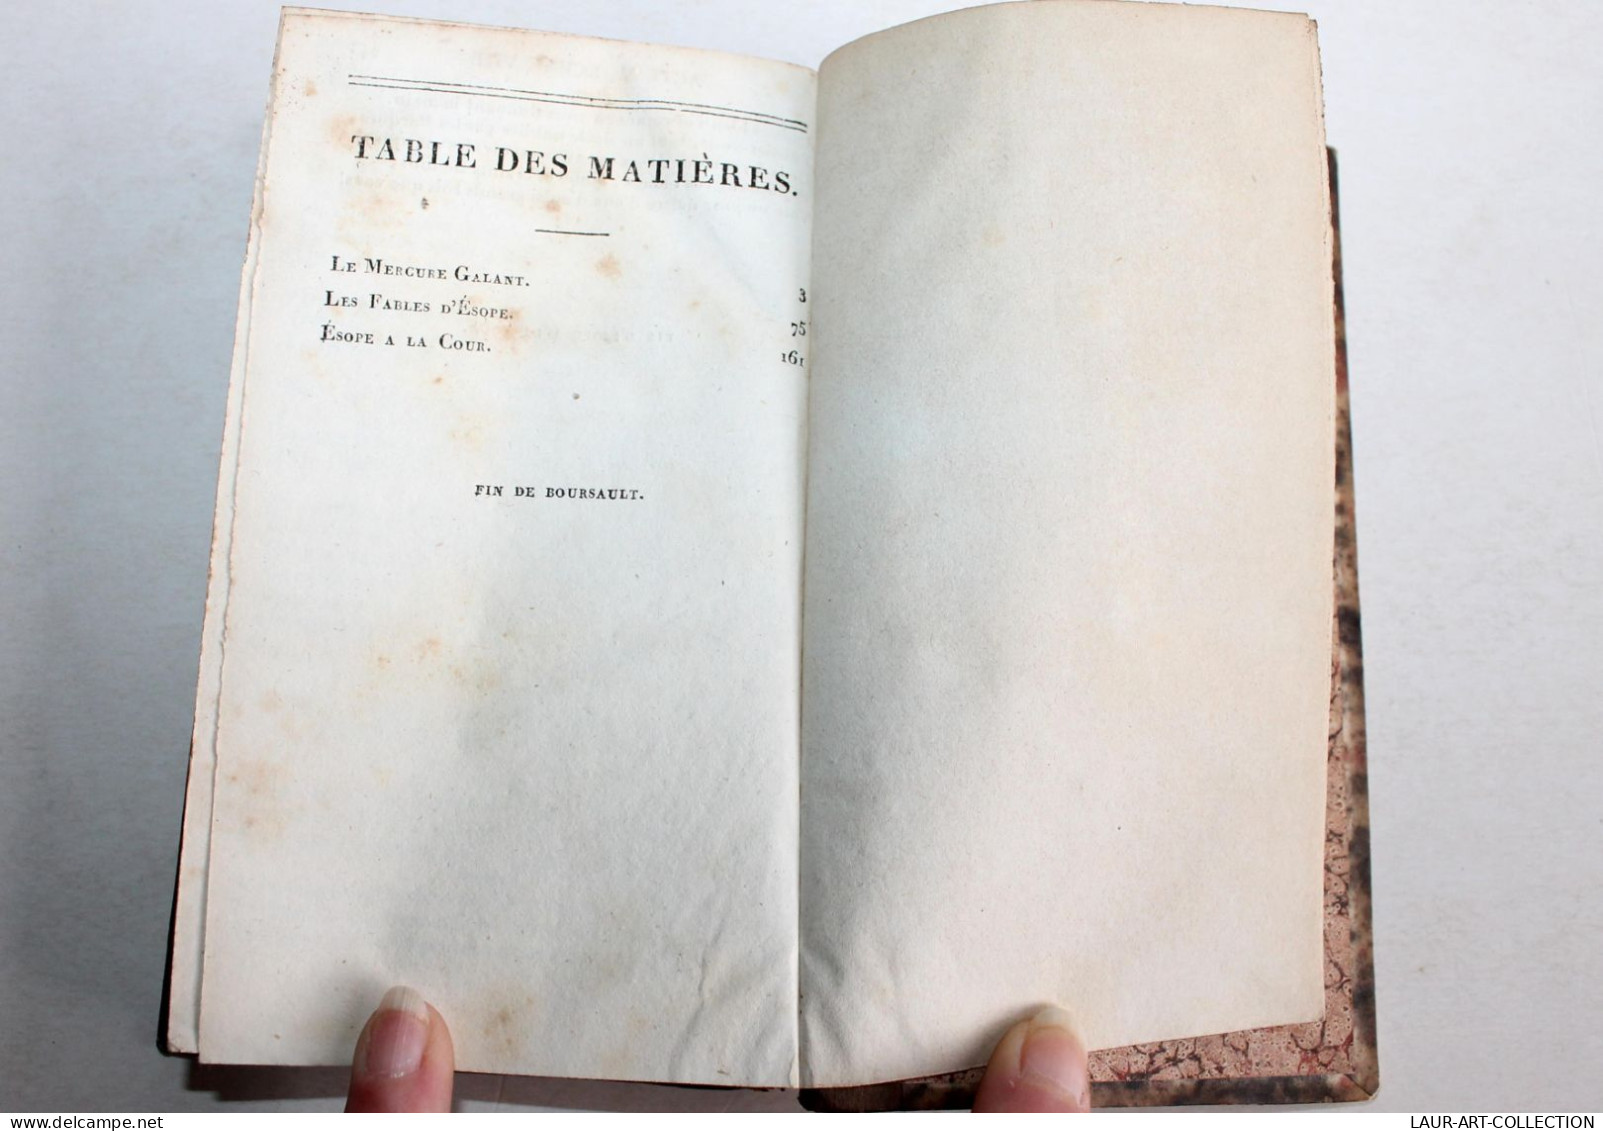 THEATRE FRANCAIS REPERTOIRE COMPLET CAMPISTRON Et BOURSAULT EDITION FOUQUET 1821 / ANCIEN LIVRE XIXe SIECLE (1803.138) - French Authors